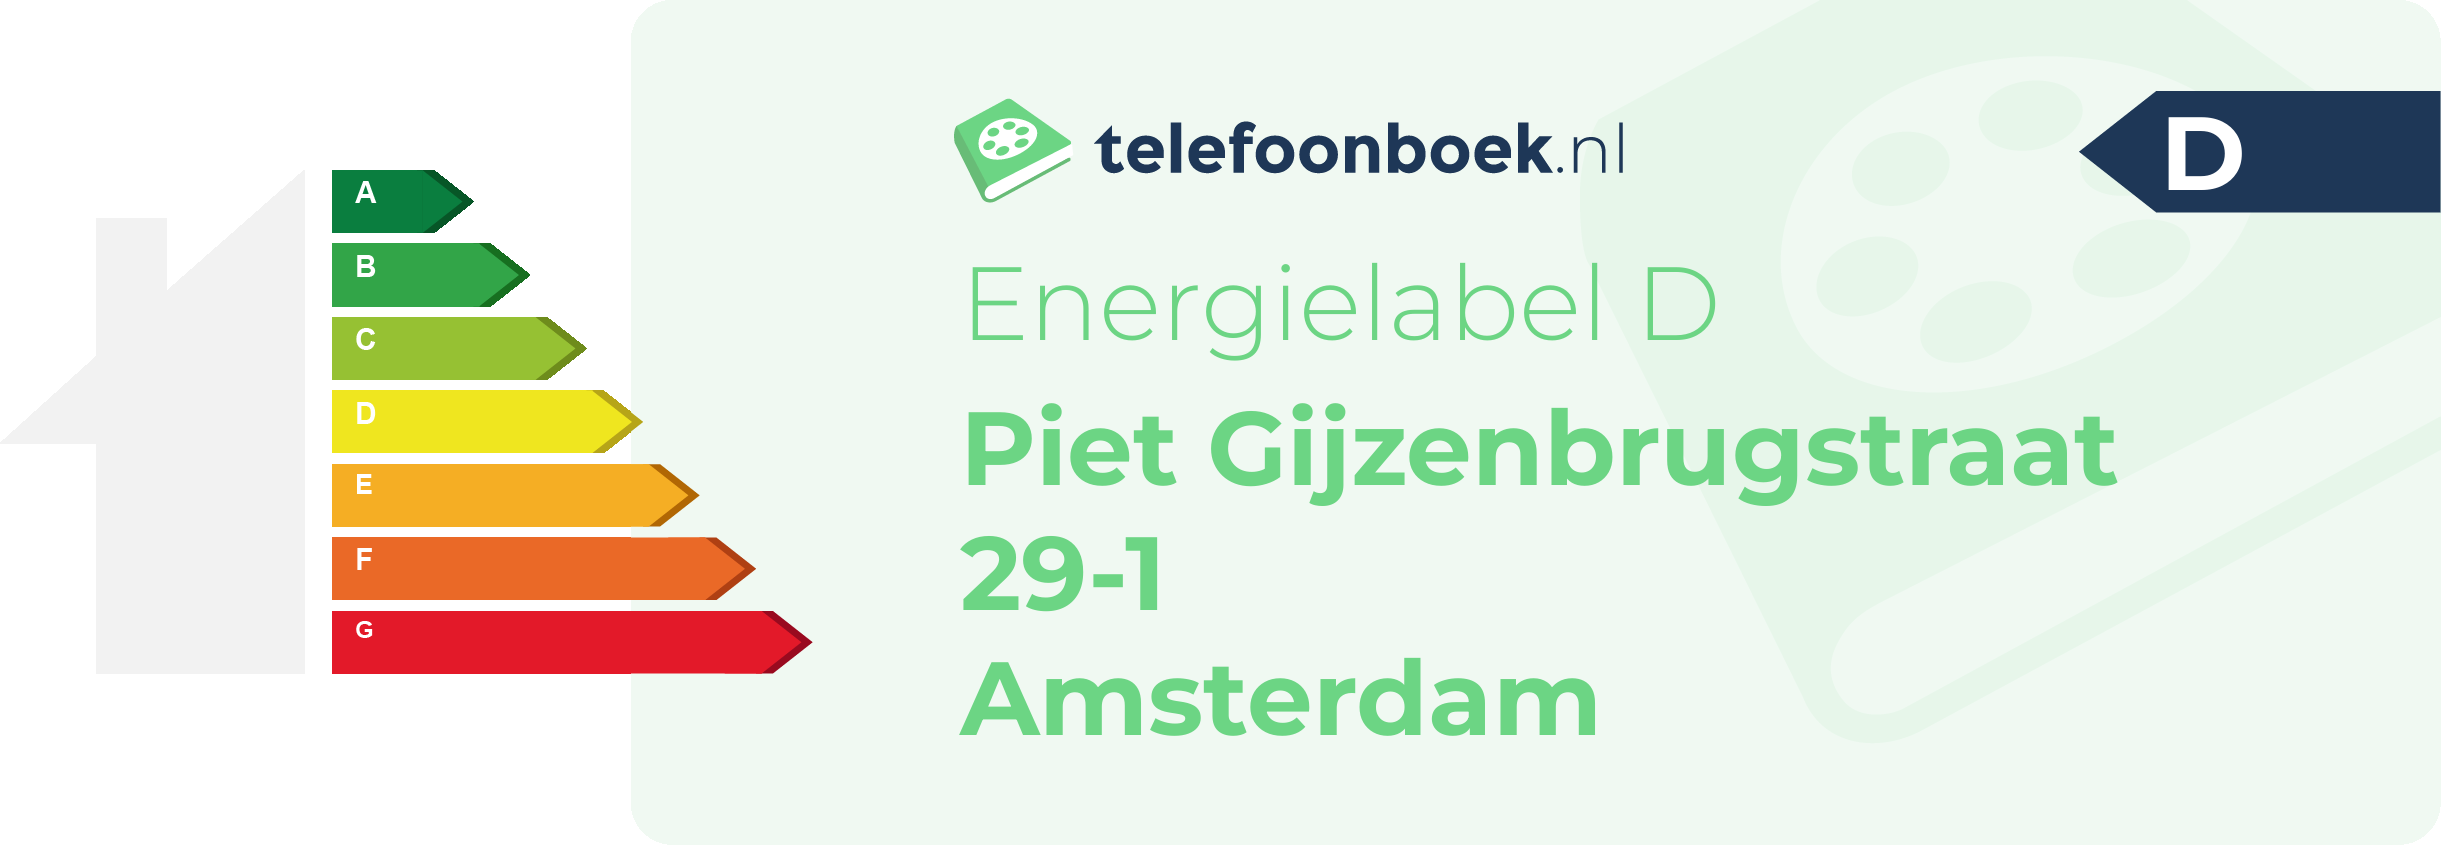 Energielabel Piet Gijzenbrugstraat 29-1 Amsterdam